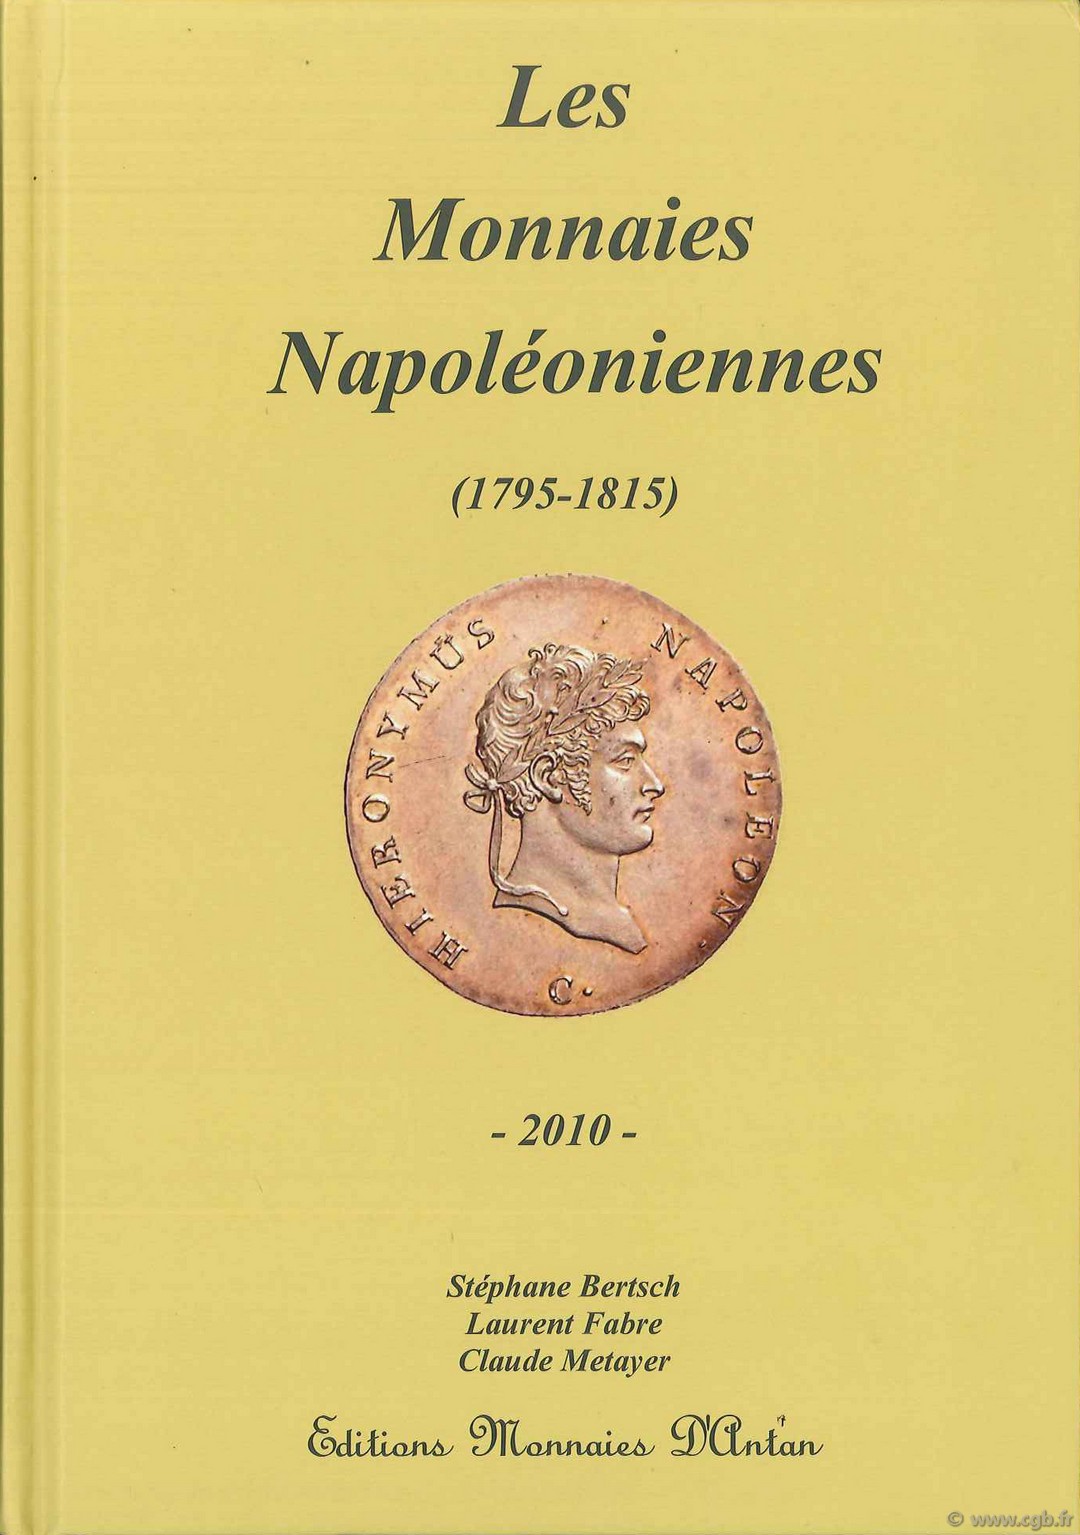 Les Monnaies Napoléoniennes (1795-1815) BERTSCH Stéphane, FABRE Laurent, METAYER Claude